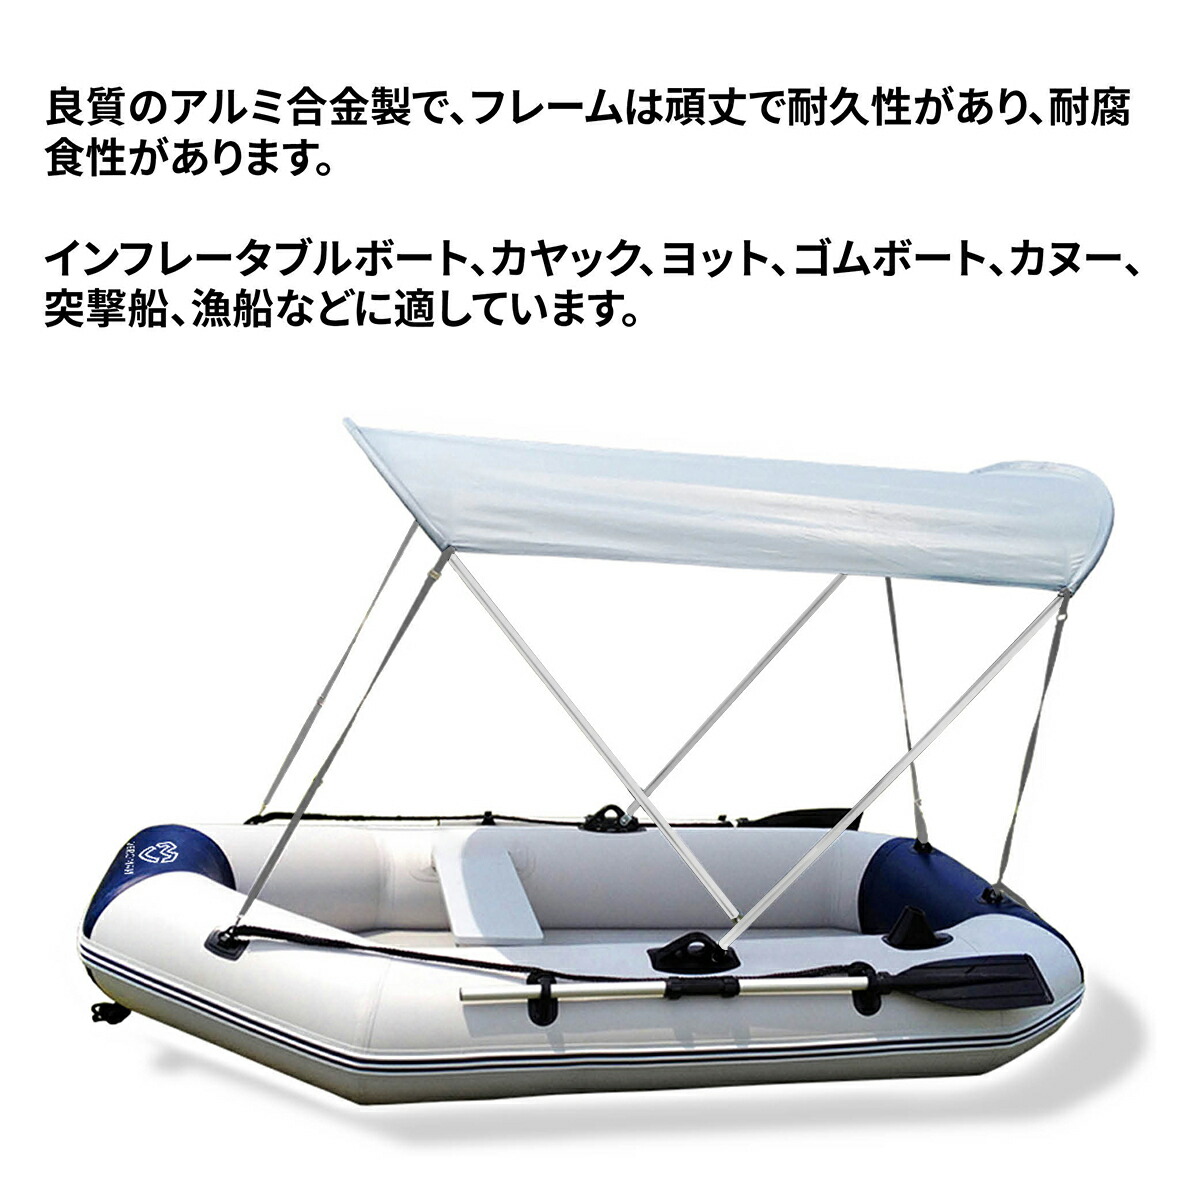 【楽天市場】VeroMan ゴムボート インフレータブルボート用 サンシェード 屋根 テント 釣り フィッシング: VEROMAN